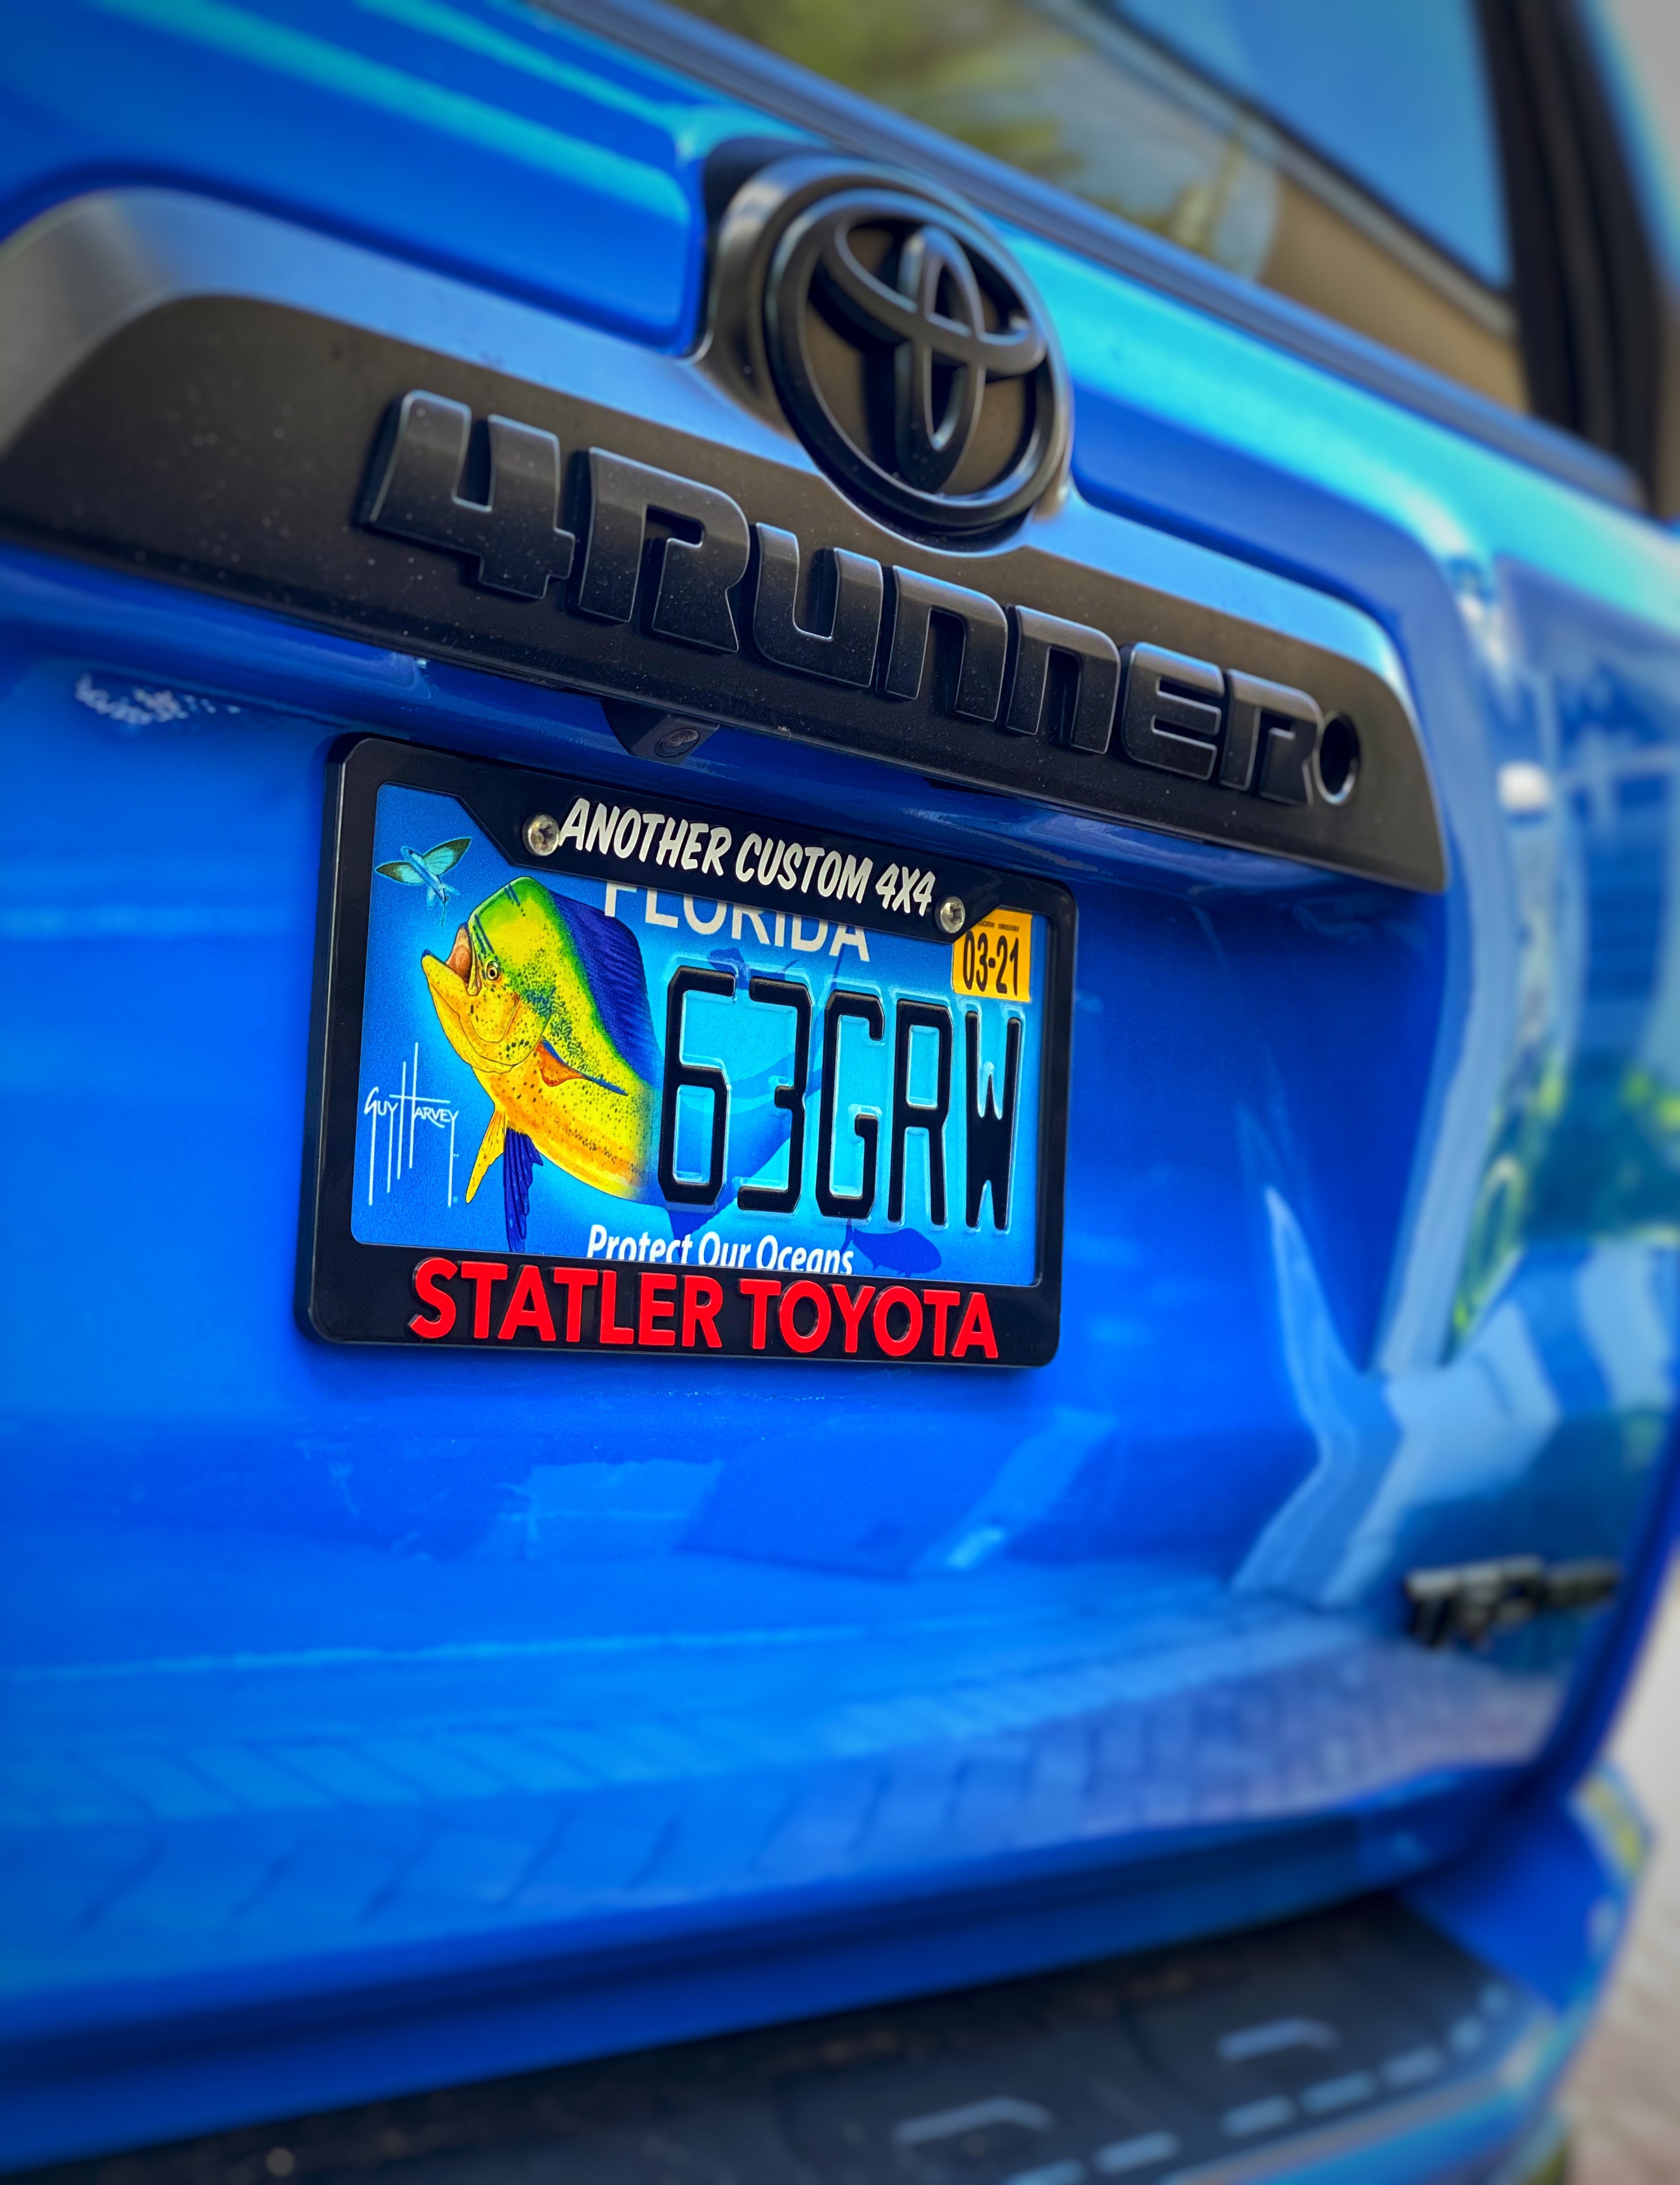 STATLER YOTA “Another Custom 4x4” License Plate Frame